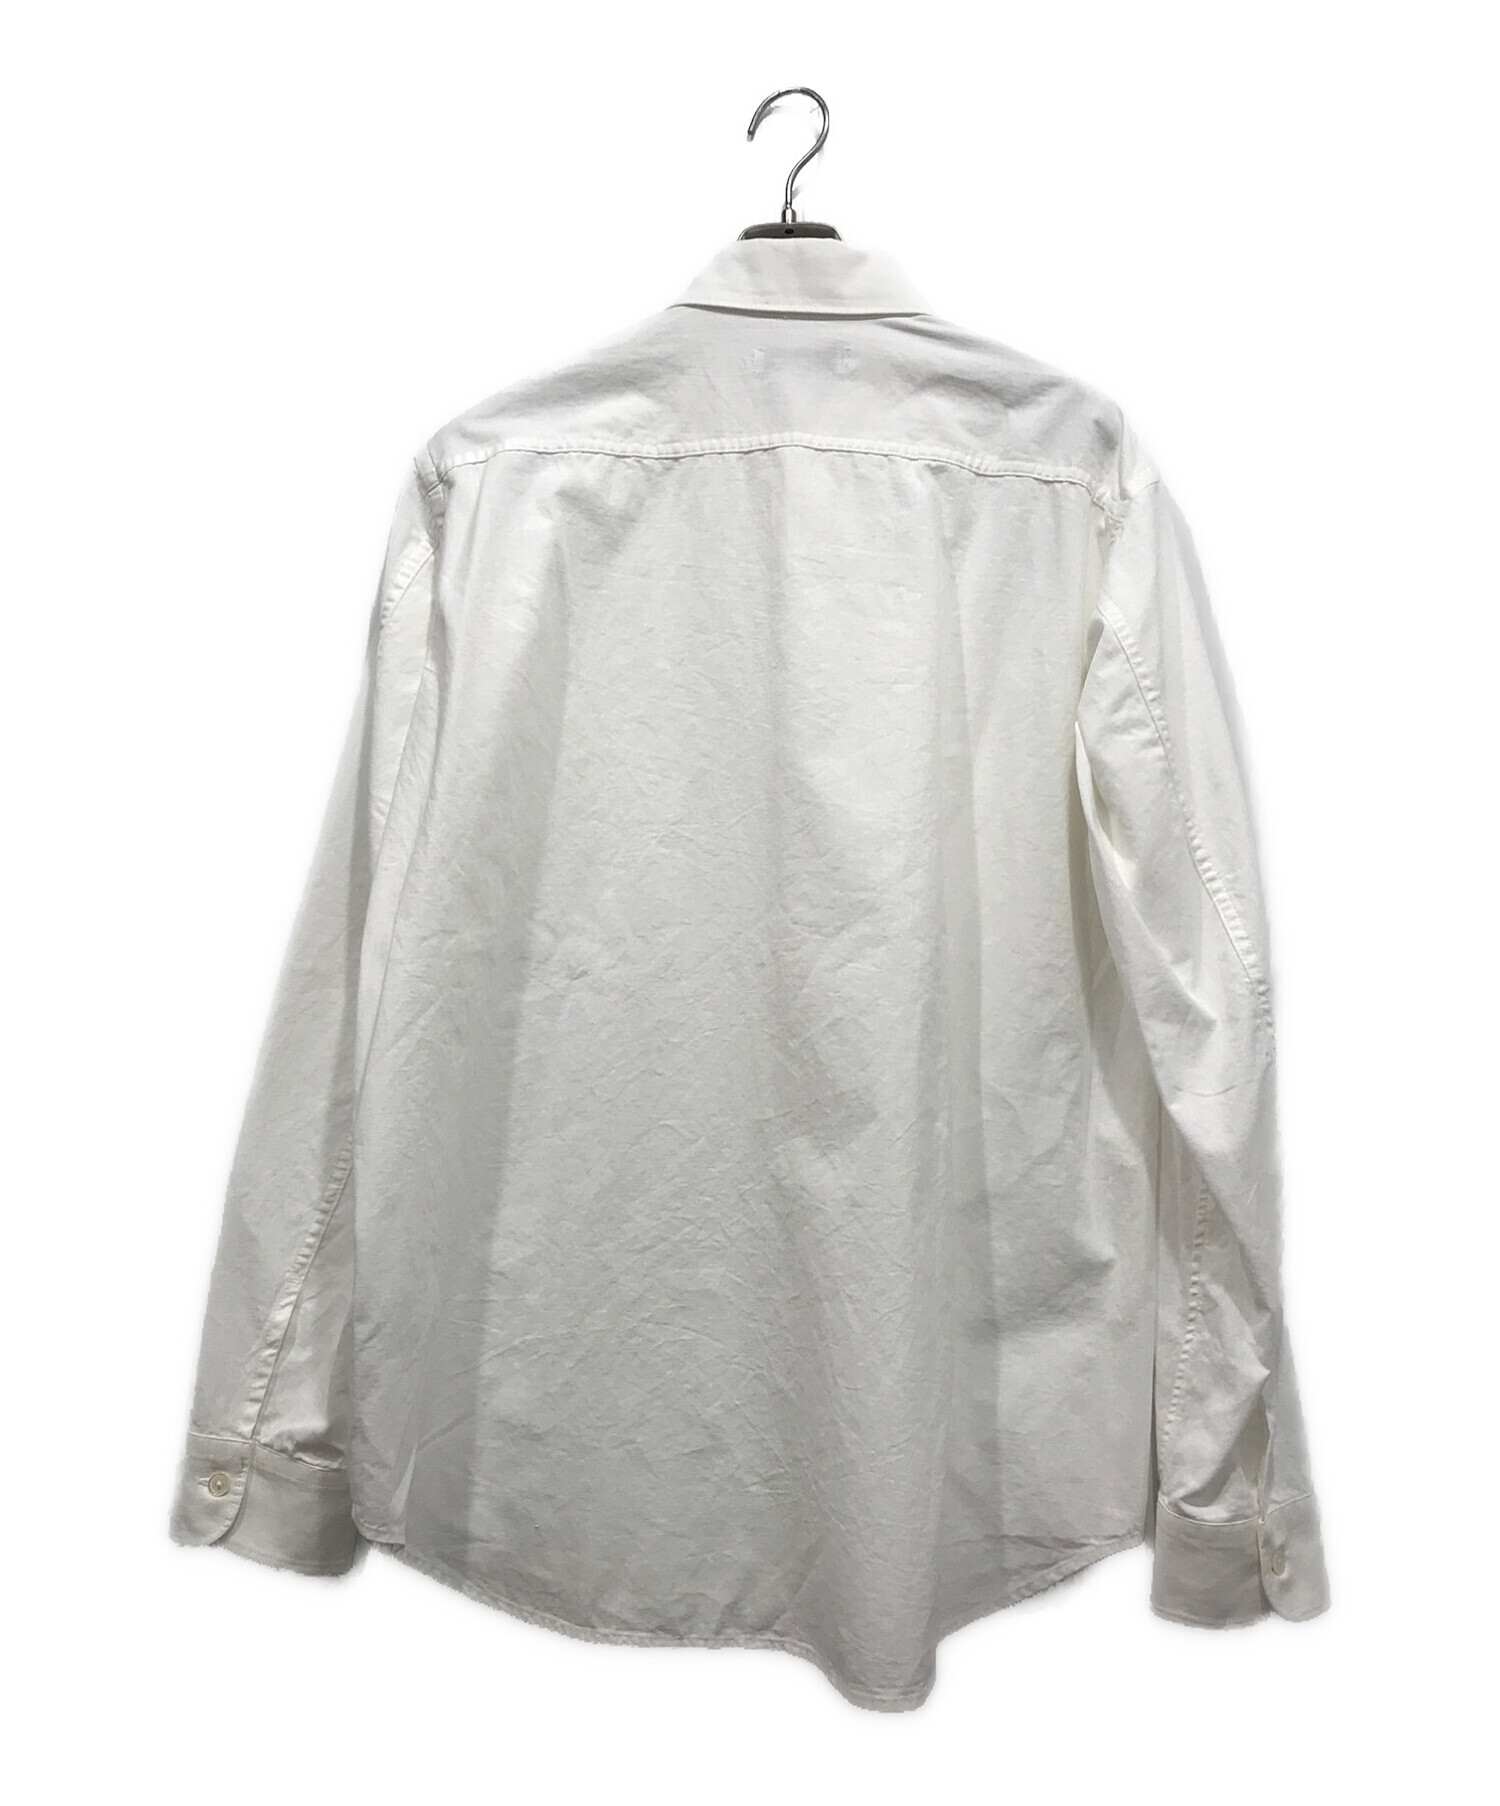 ESTNATION (エストネーション) リラックスフィットダンガリーシャツ ホワイト サイズ:XL